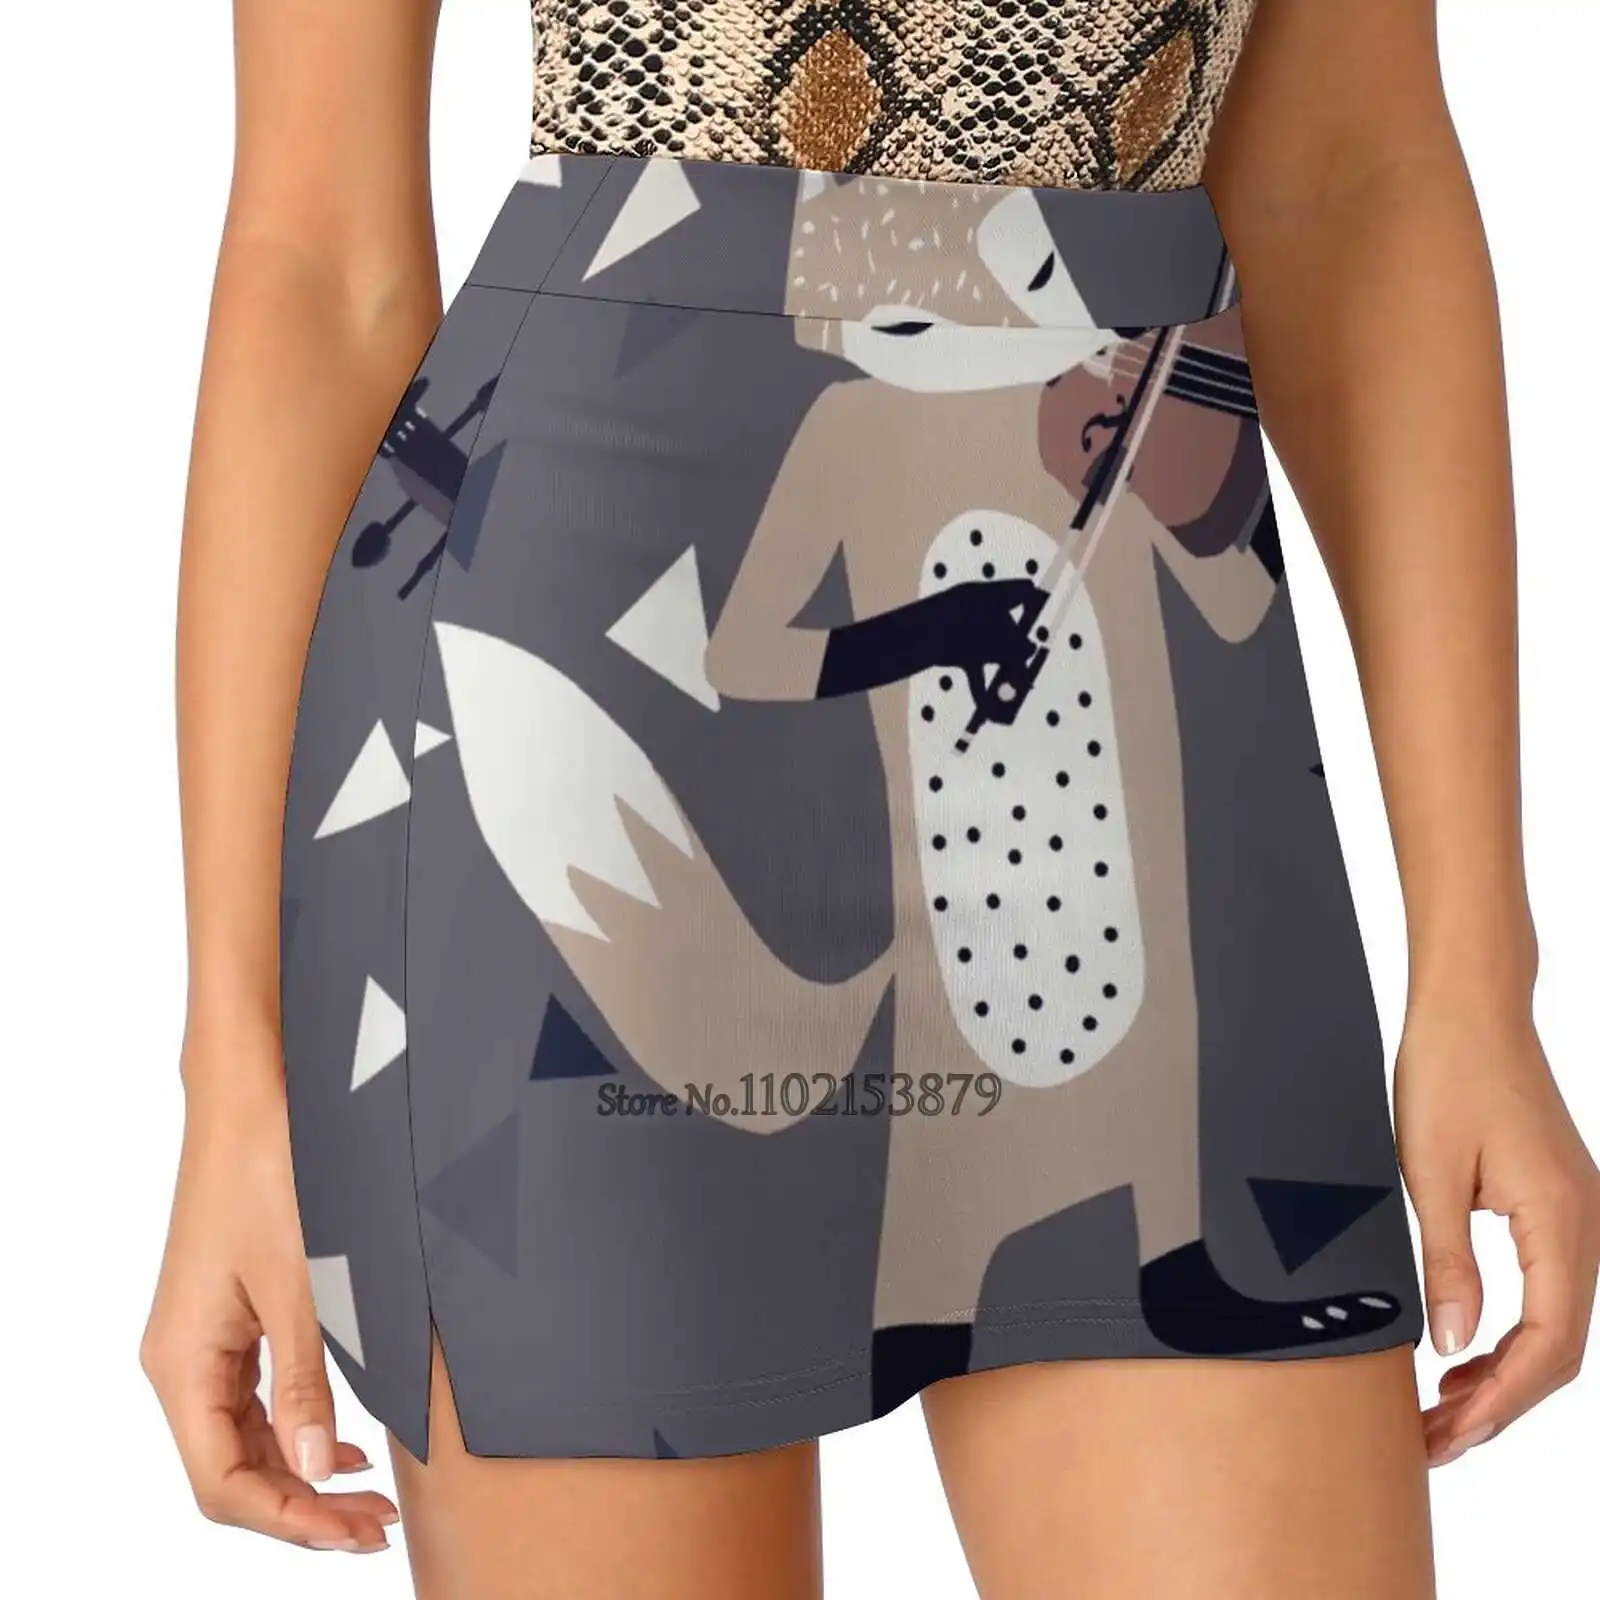 

Женская модная спортивная юбка Foxy с карманами, юбка для бега в стиле скрипки и игры в гольф, Детская музыка